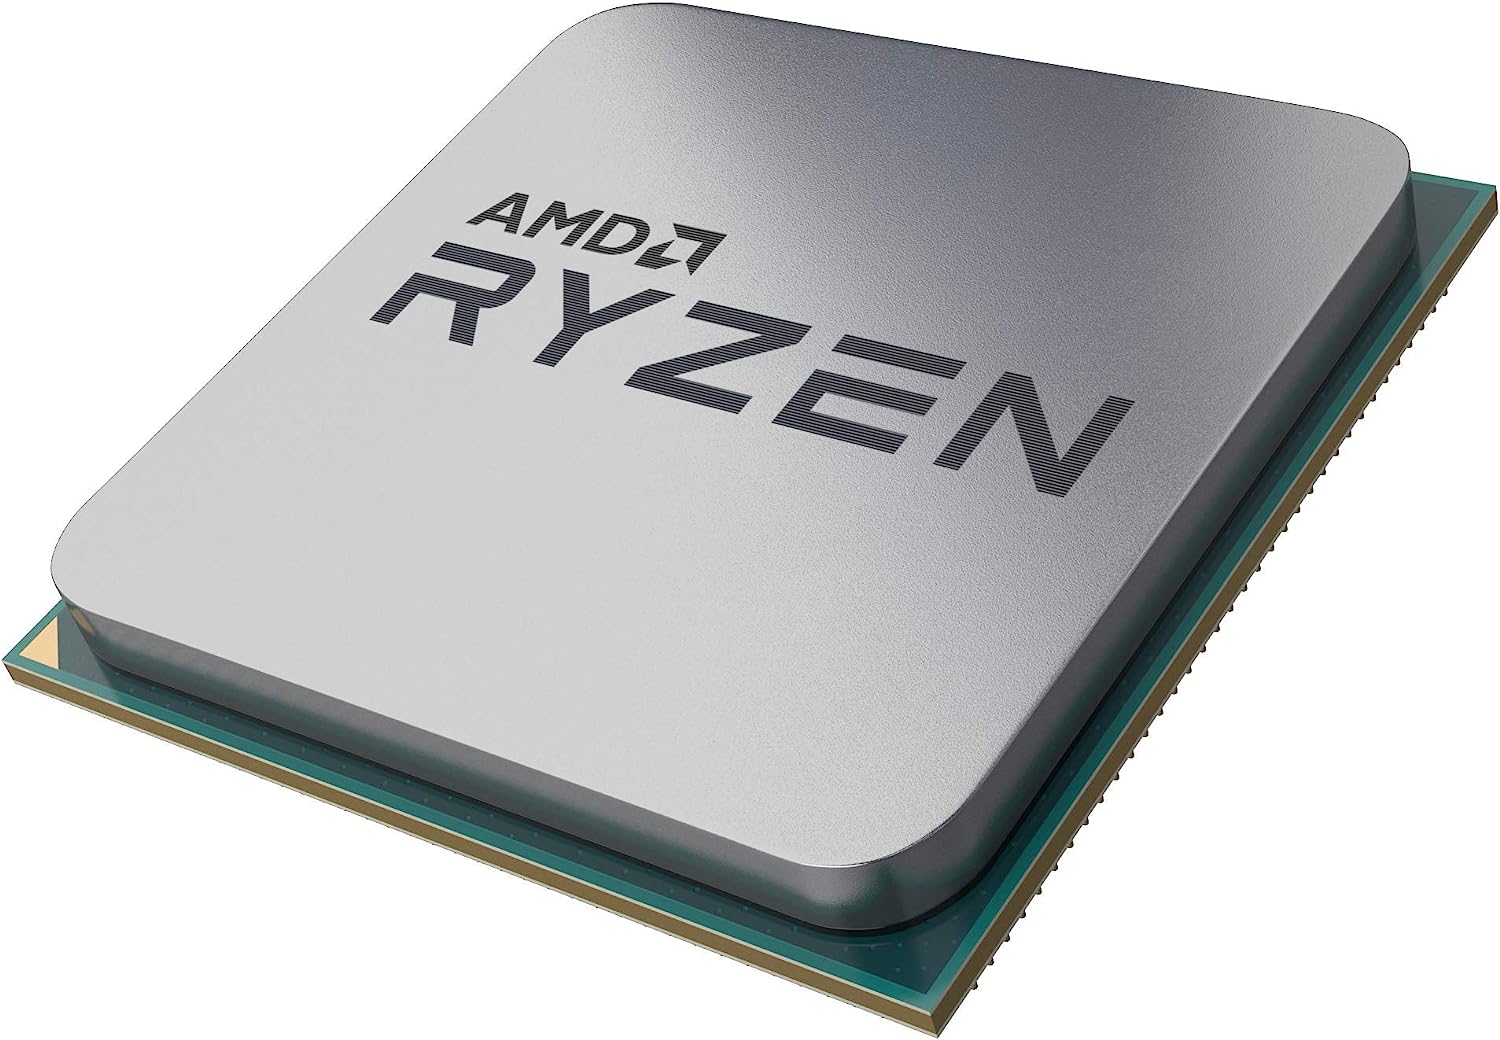 AMD Ryzen 5 3600 - Ultrafast performance for state-of-the-art gaming desktops 0730143314299